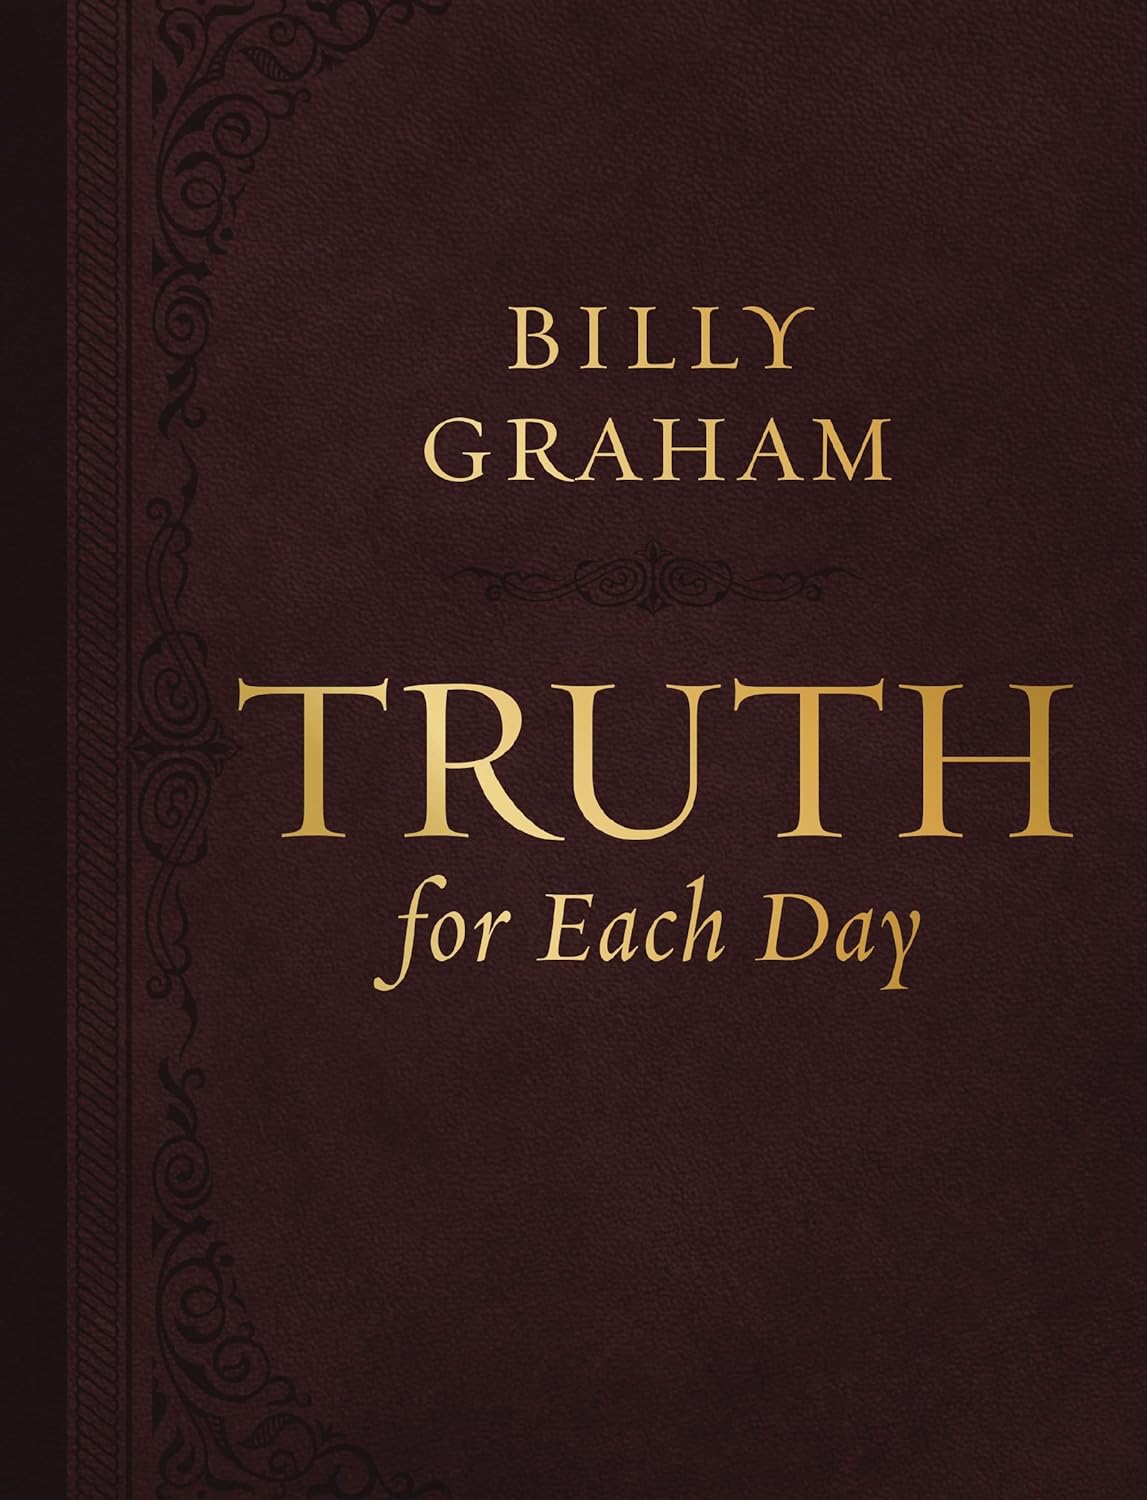 Bill Graham Trust for Each Day